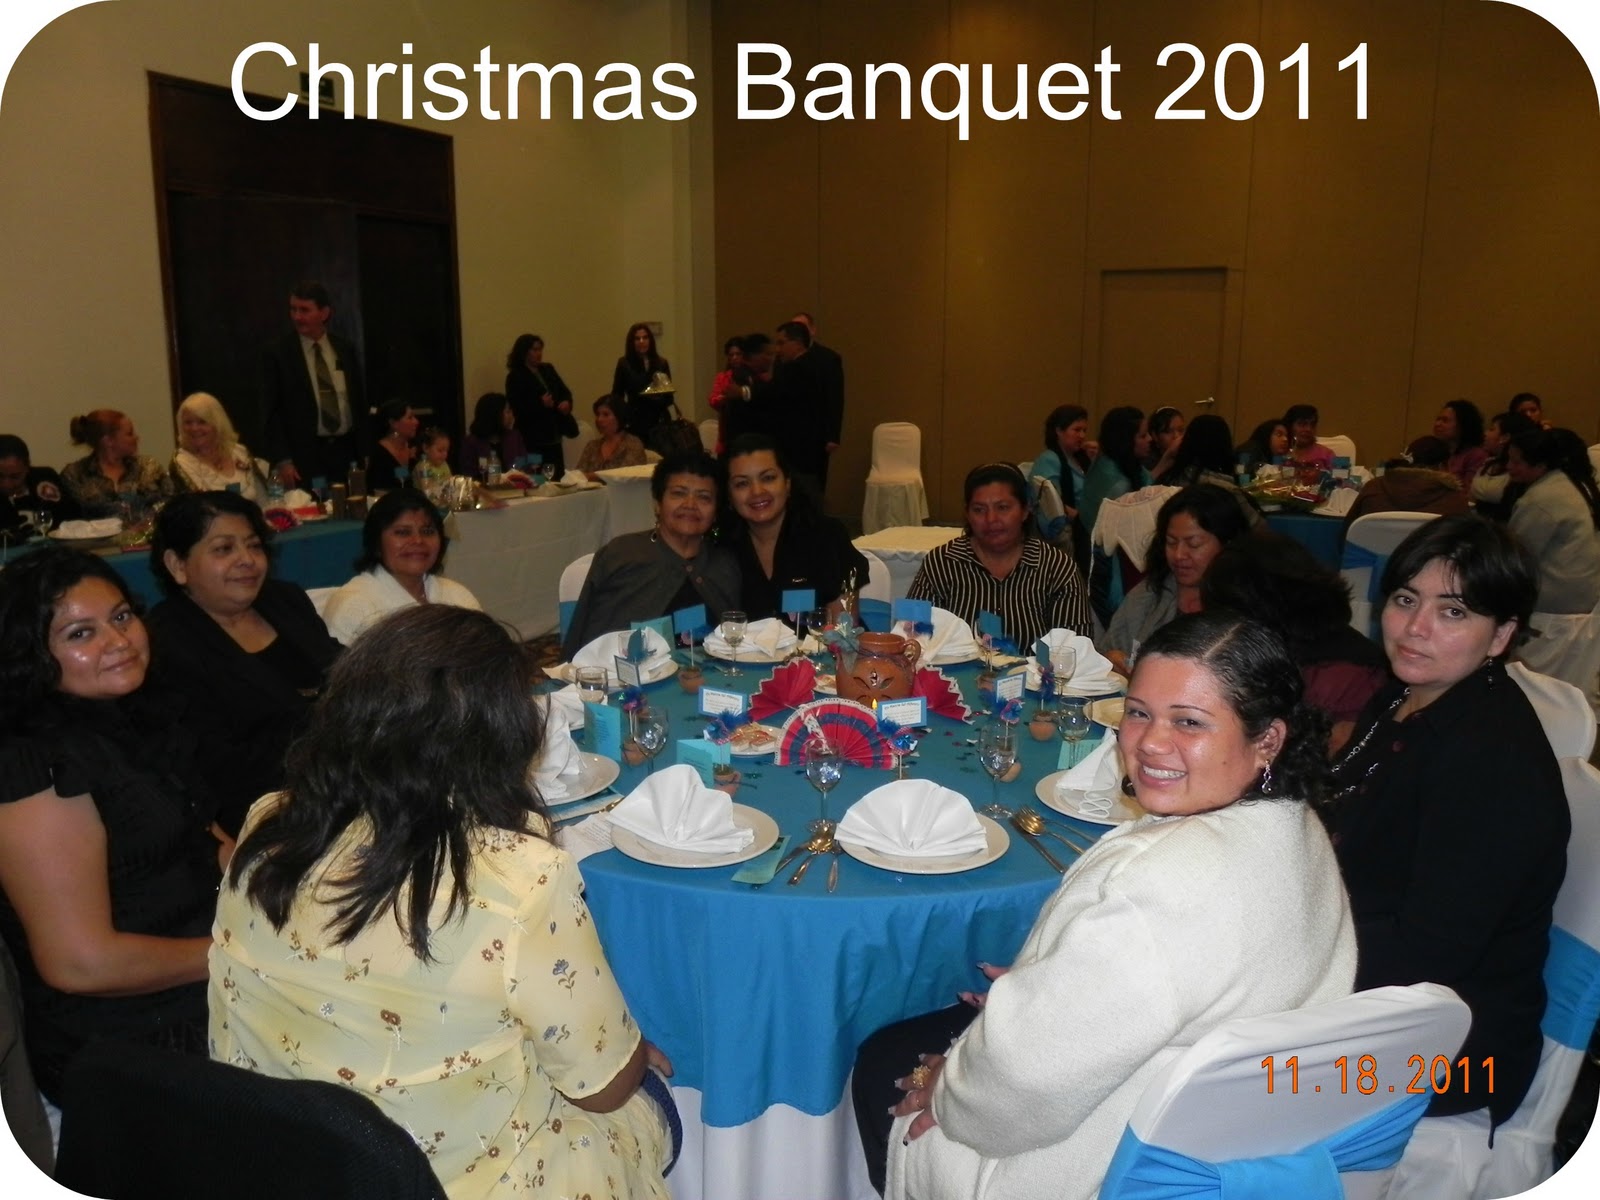 http://3.bp.blogspot.com/-mHmOtMhZibI/Txi13HNwBoI/AAAAAAAABR0/UtIVwRfVdjg/s1600/Fizzy%2527s+pictures+from+the+banquet+485.jpg